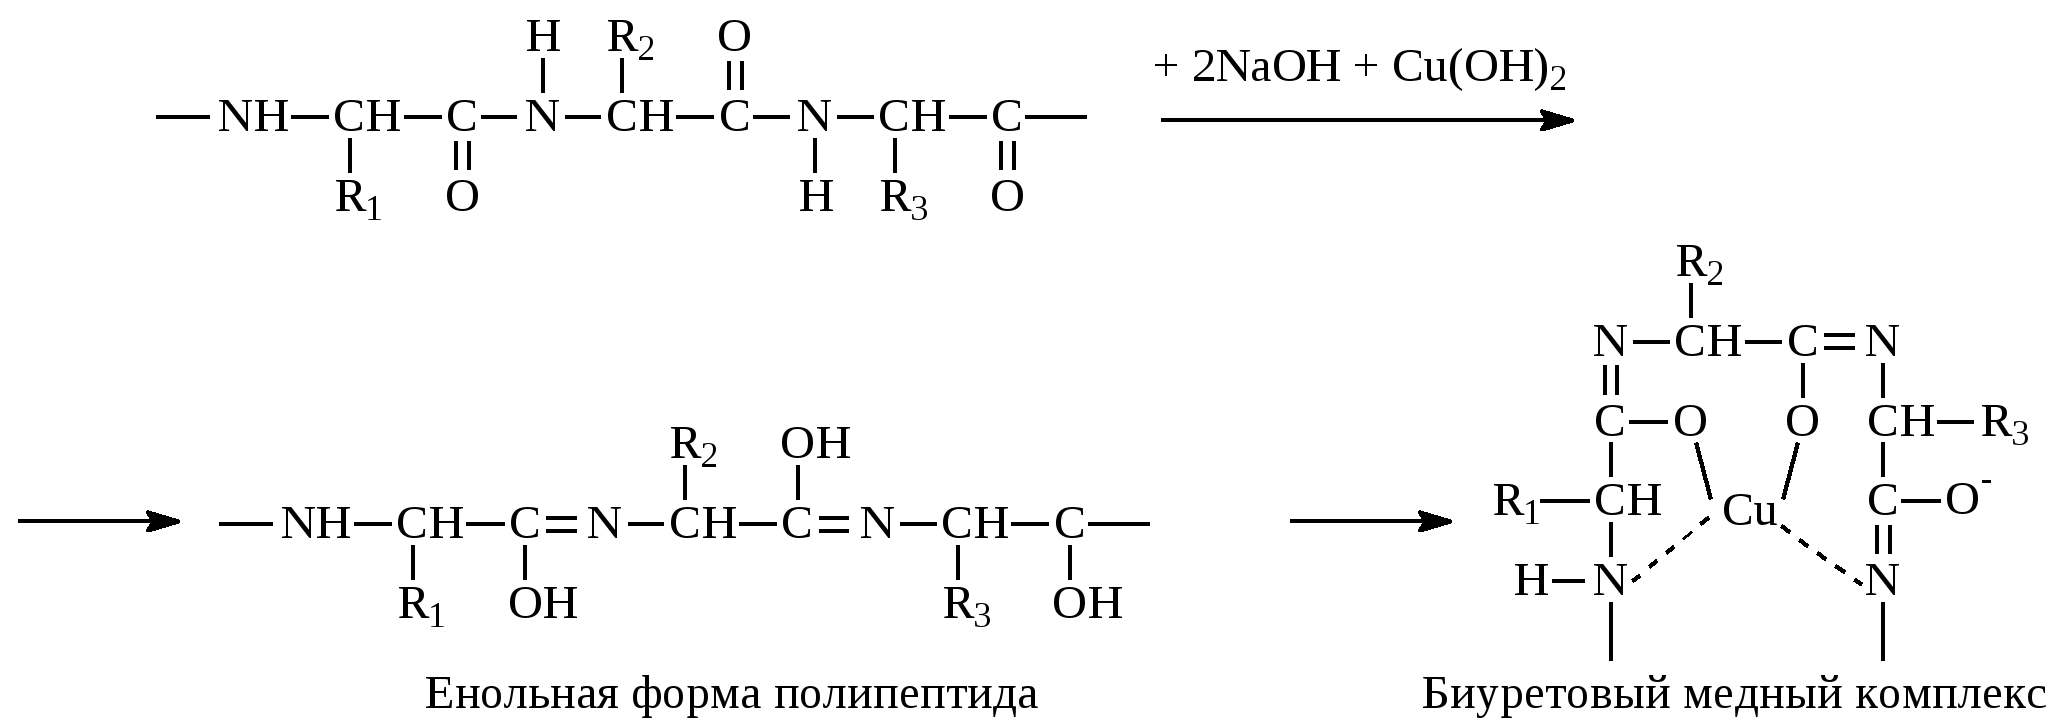 Сборка полипептидов. Формы полипептидов. Енольная форма. Реакция глицина с формальдегидом. Глицин и формальдегид.